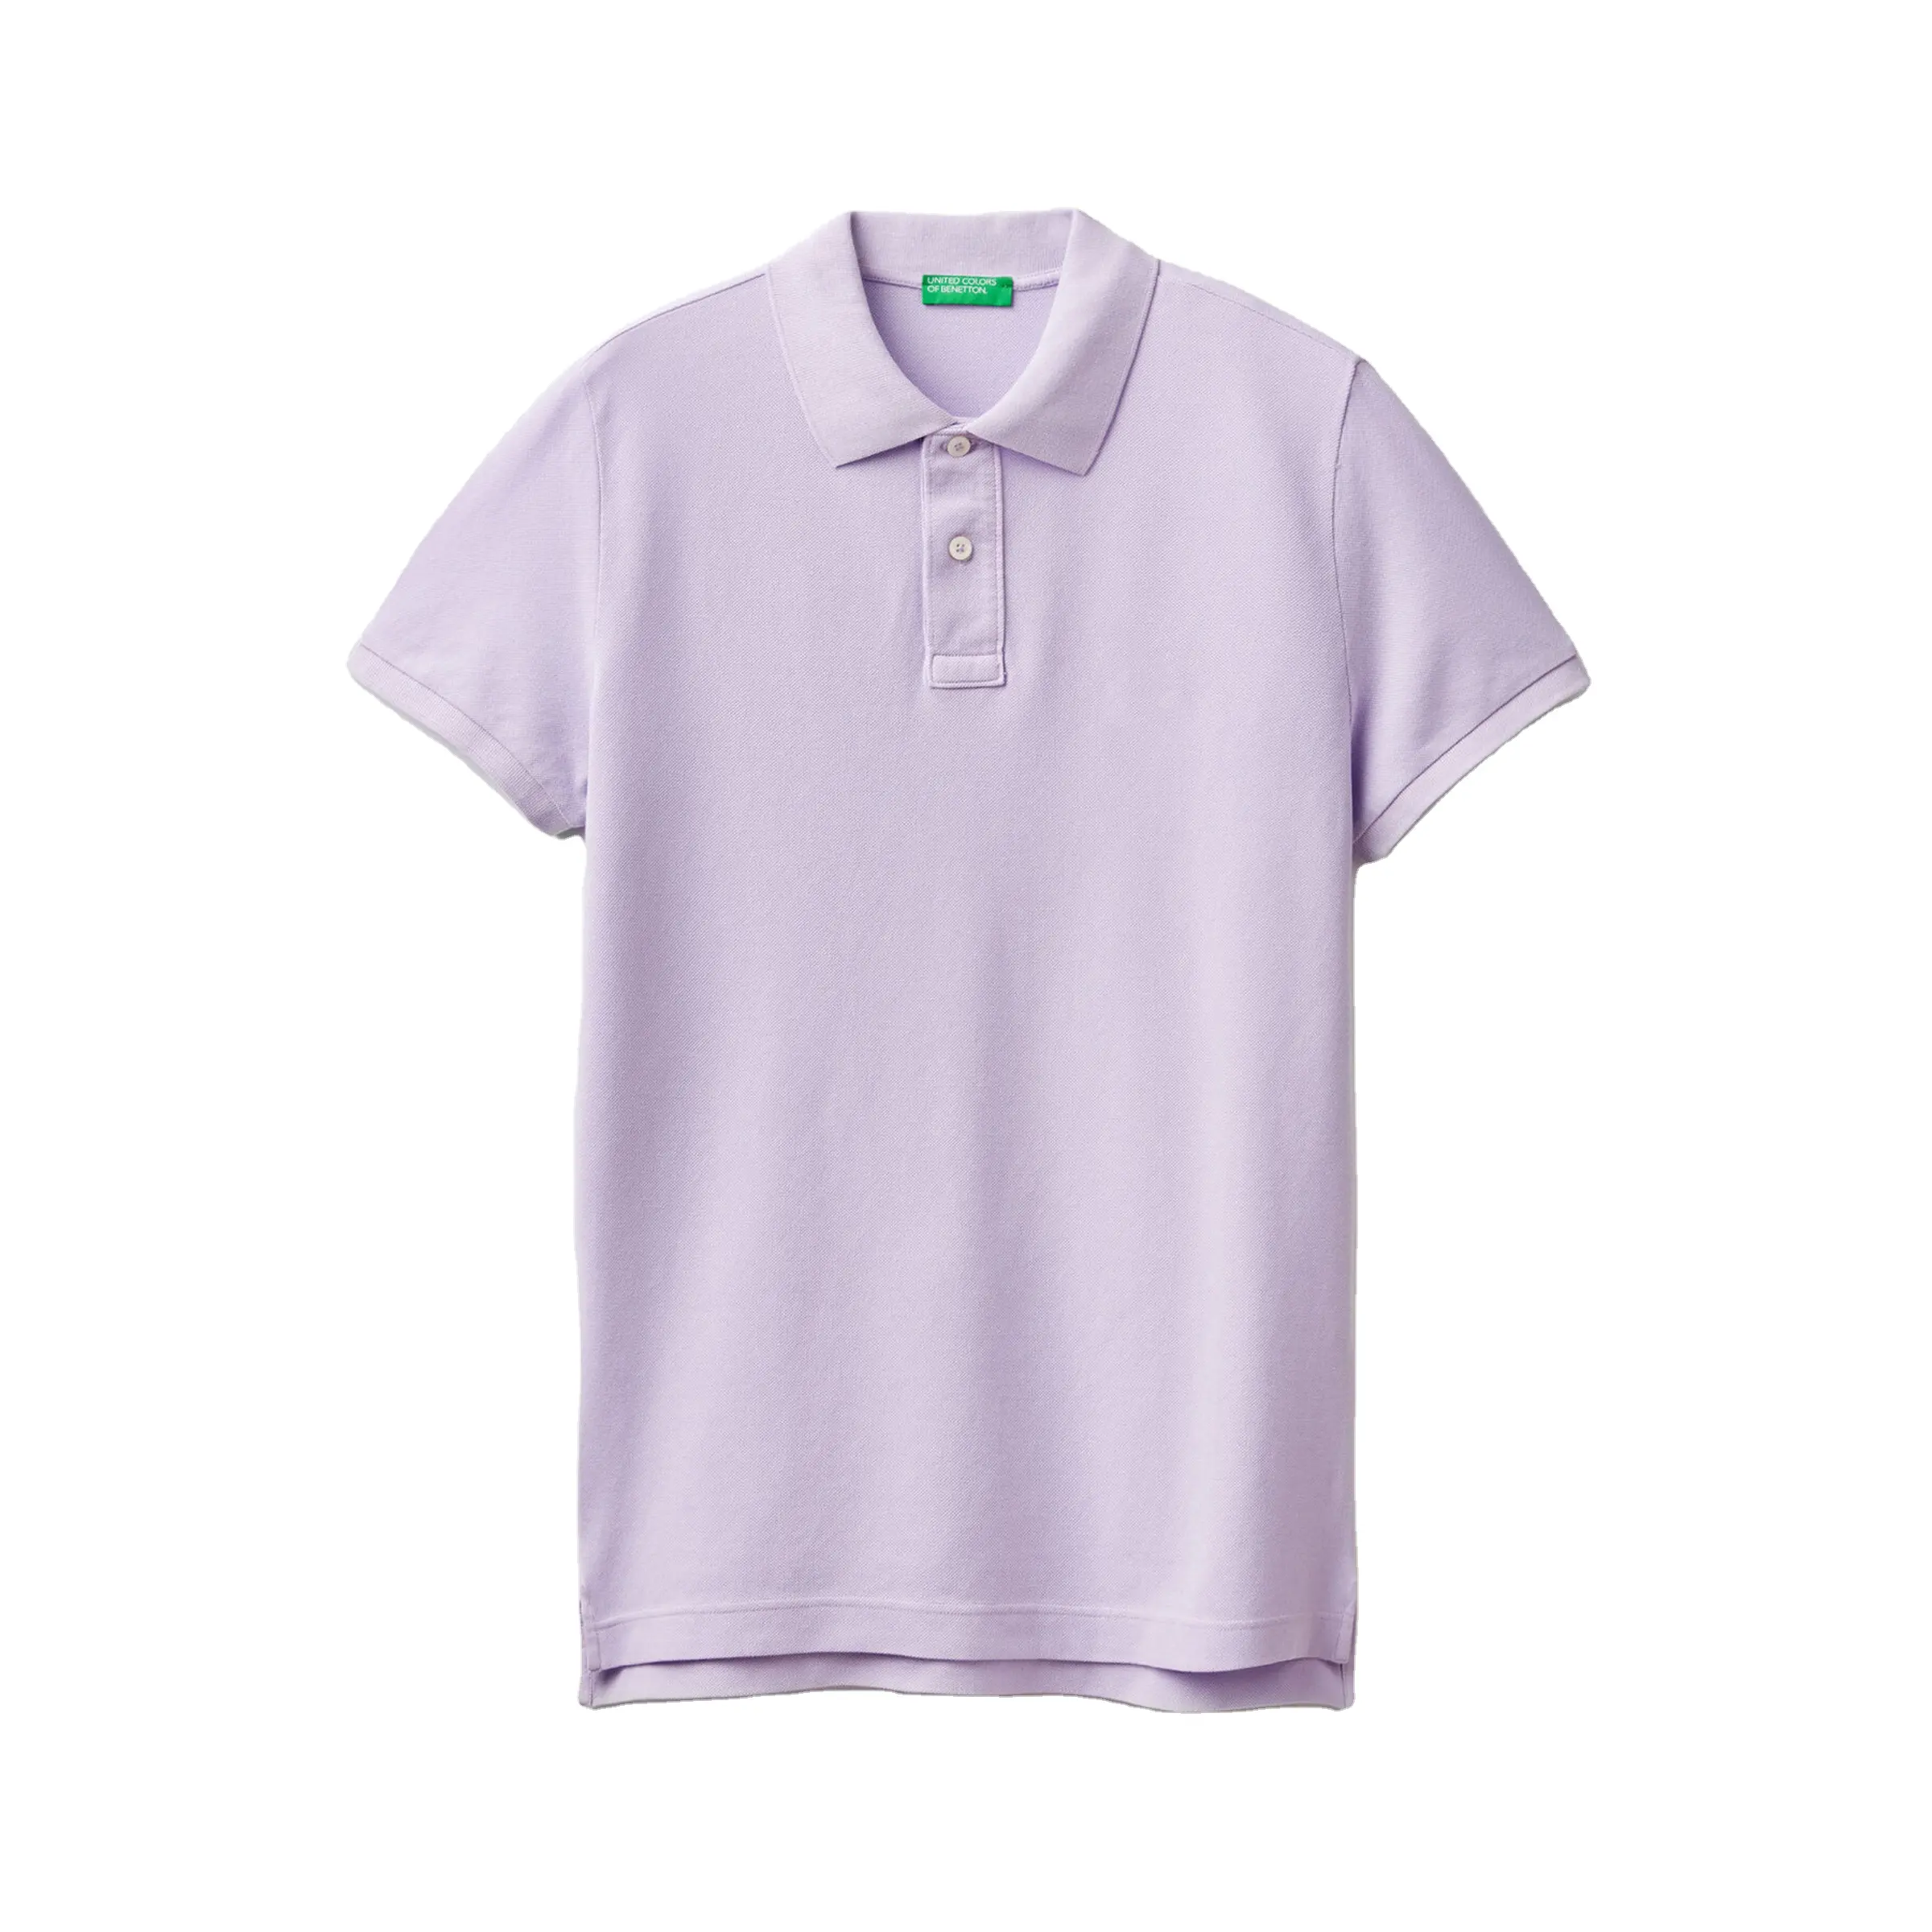 Hombre casual tops ropa combinación de colores cuello vuelto 100% algodón logotipo personalizado impreso Polo camiseta